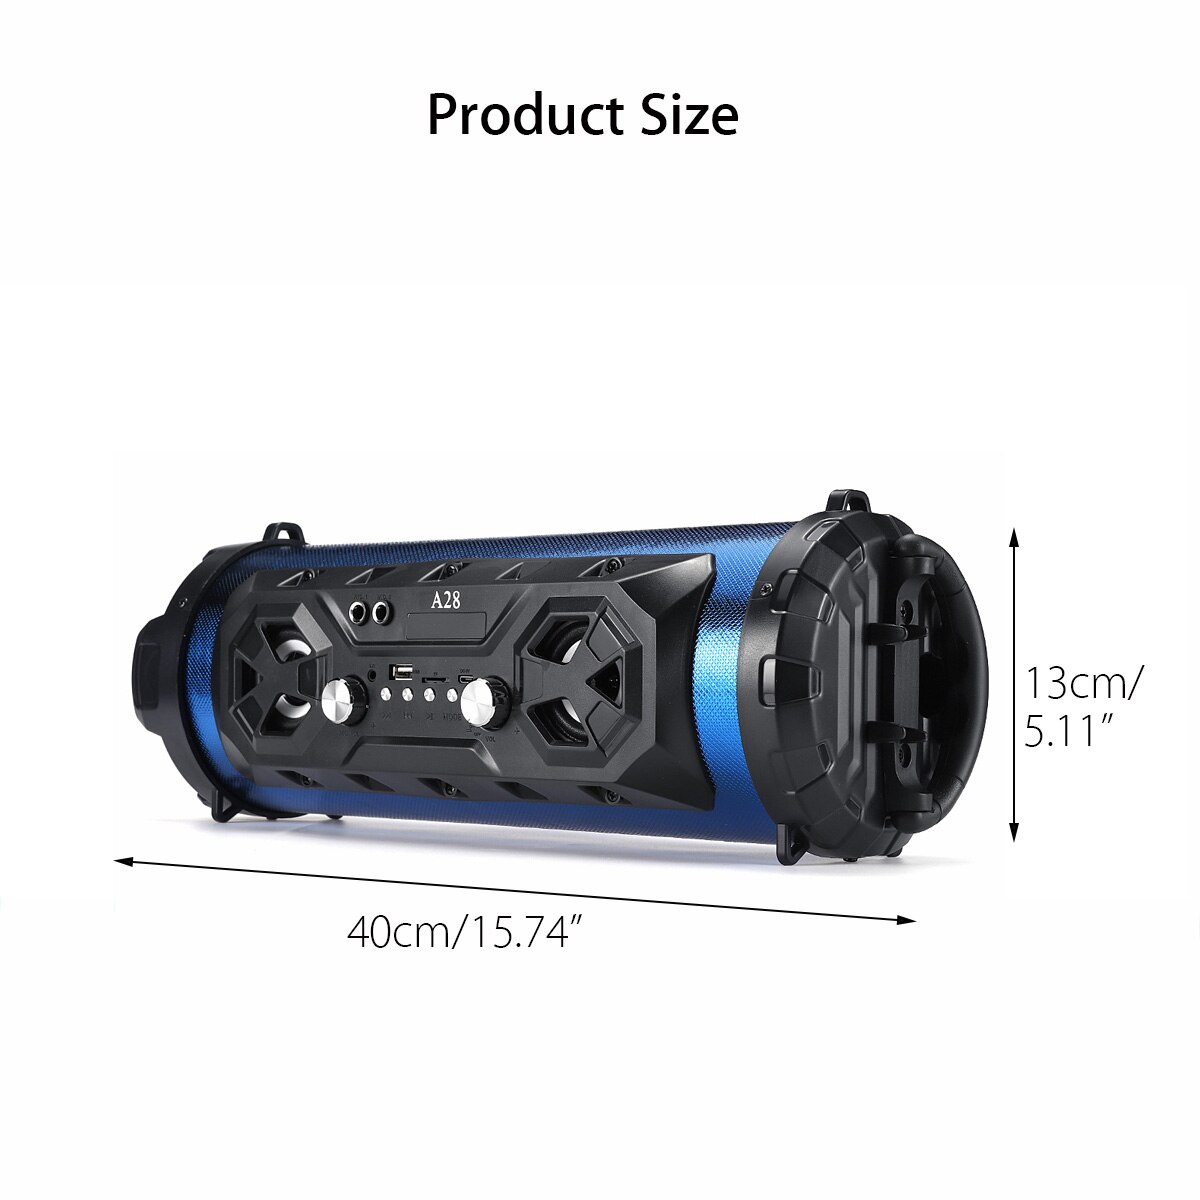 Color-lumi-re-LED-Portable-bluetooth-haut-parleur-puissant-sans-fil-ext-rieur-haut-parleur-Camping